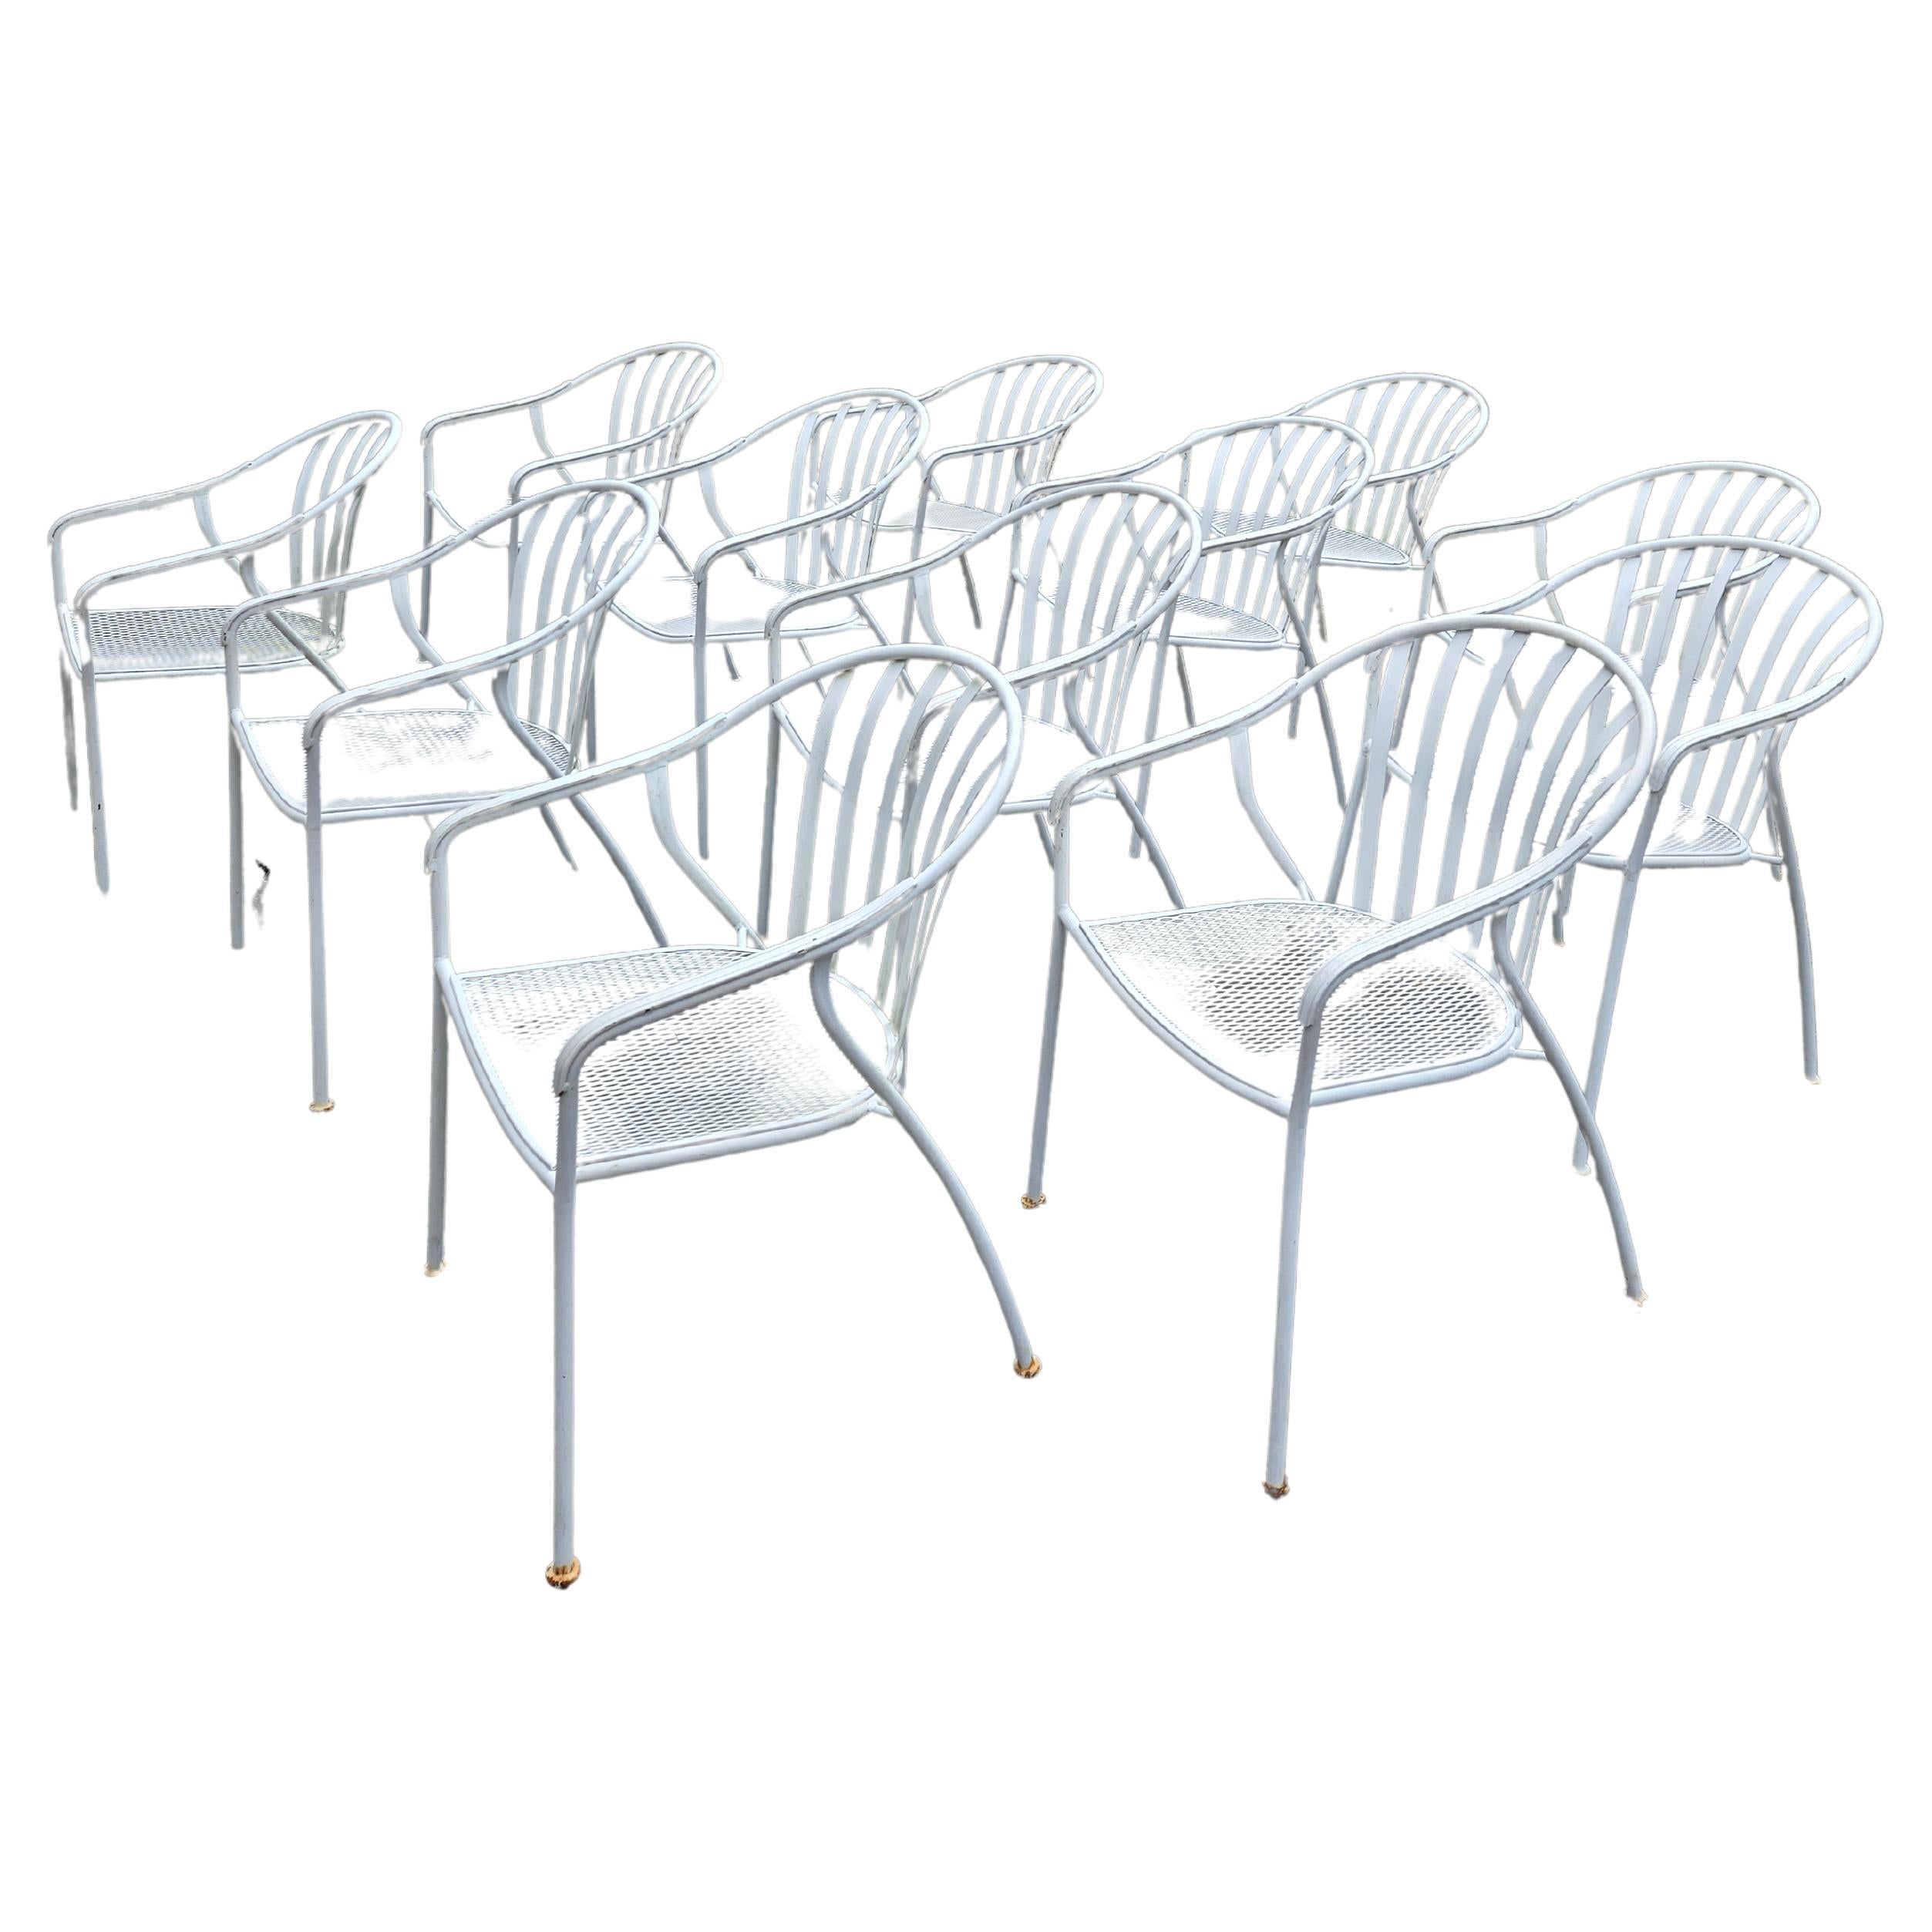 
Voici ce lot de 12 chaises vintage en fer forgé, parfaites pour ajouter une touche de charme antique à n'importe quel espace de vie. La construction robuste et durable garantit que ces chaises peuvent résister à un usage quotidien et remplir leur